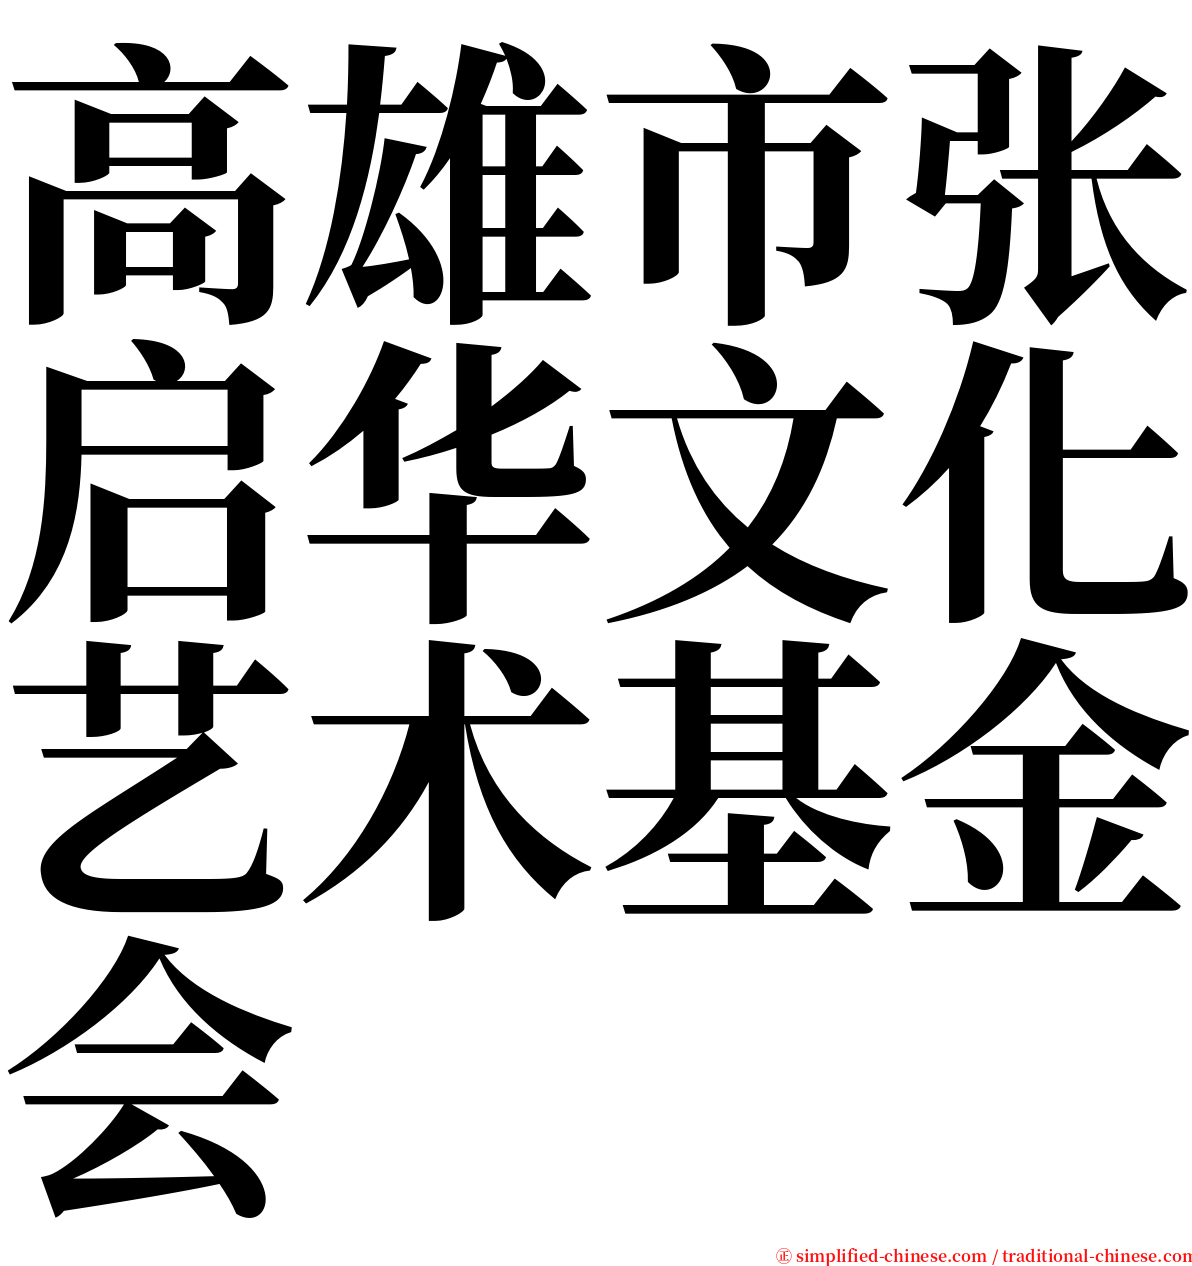 高雄市张启华文化艺术基金会 serif font